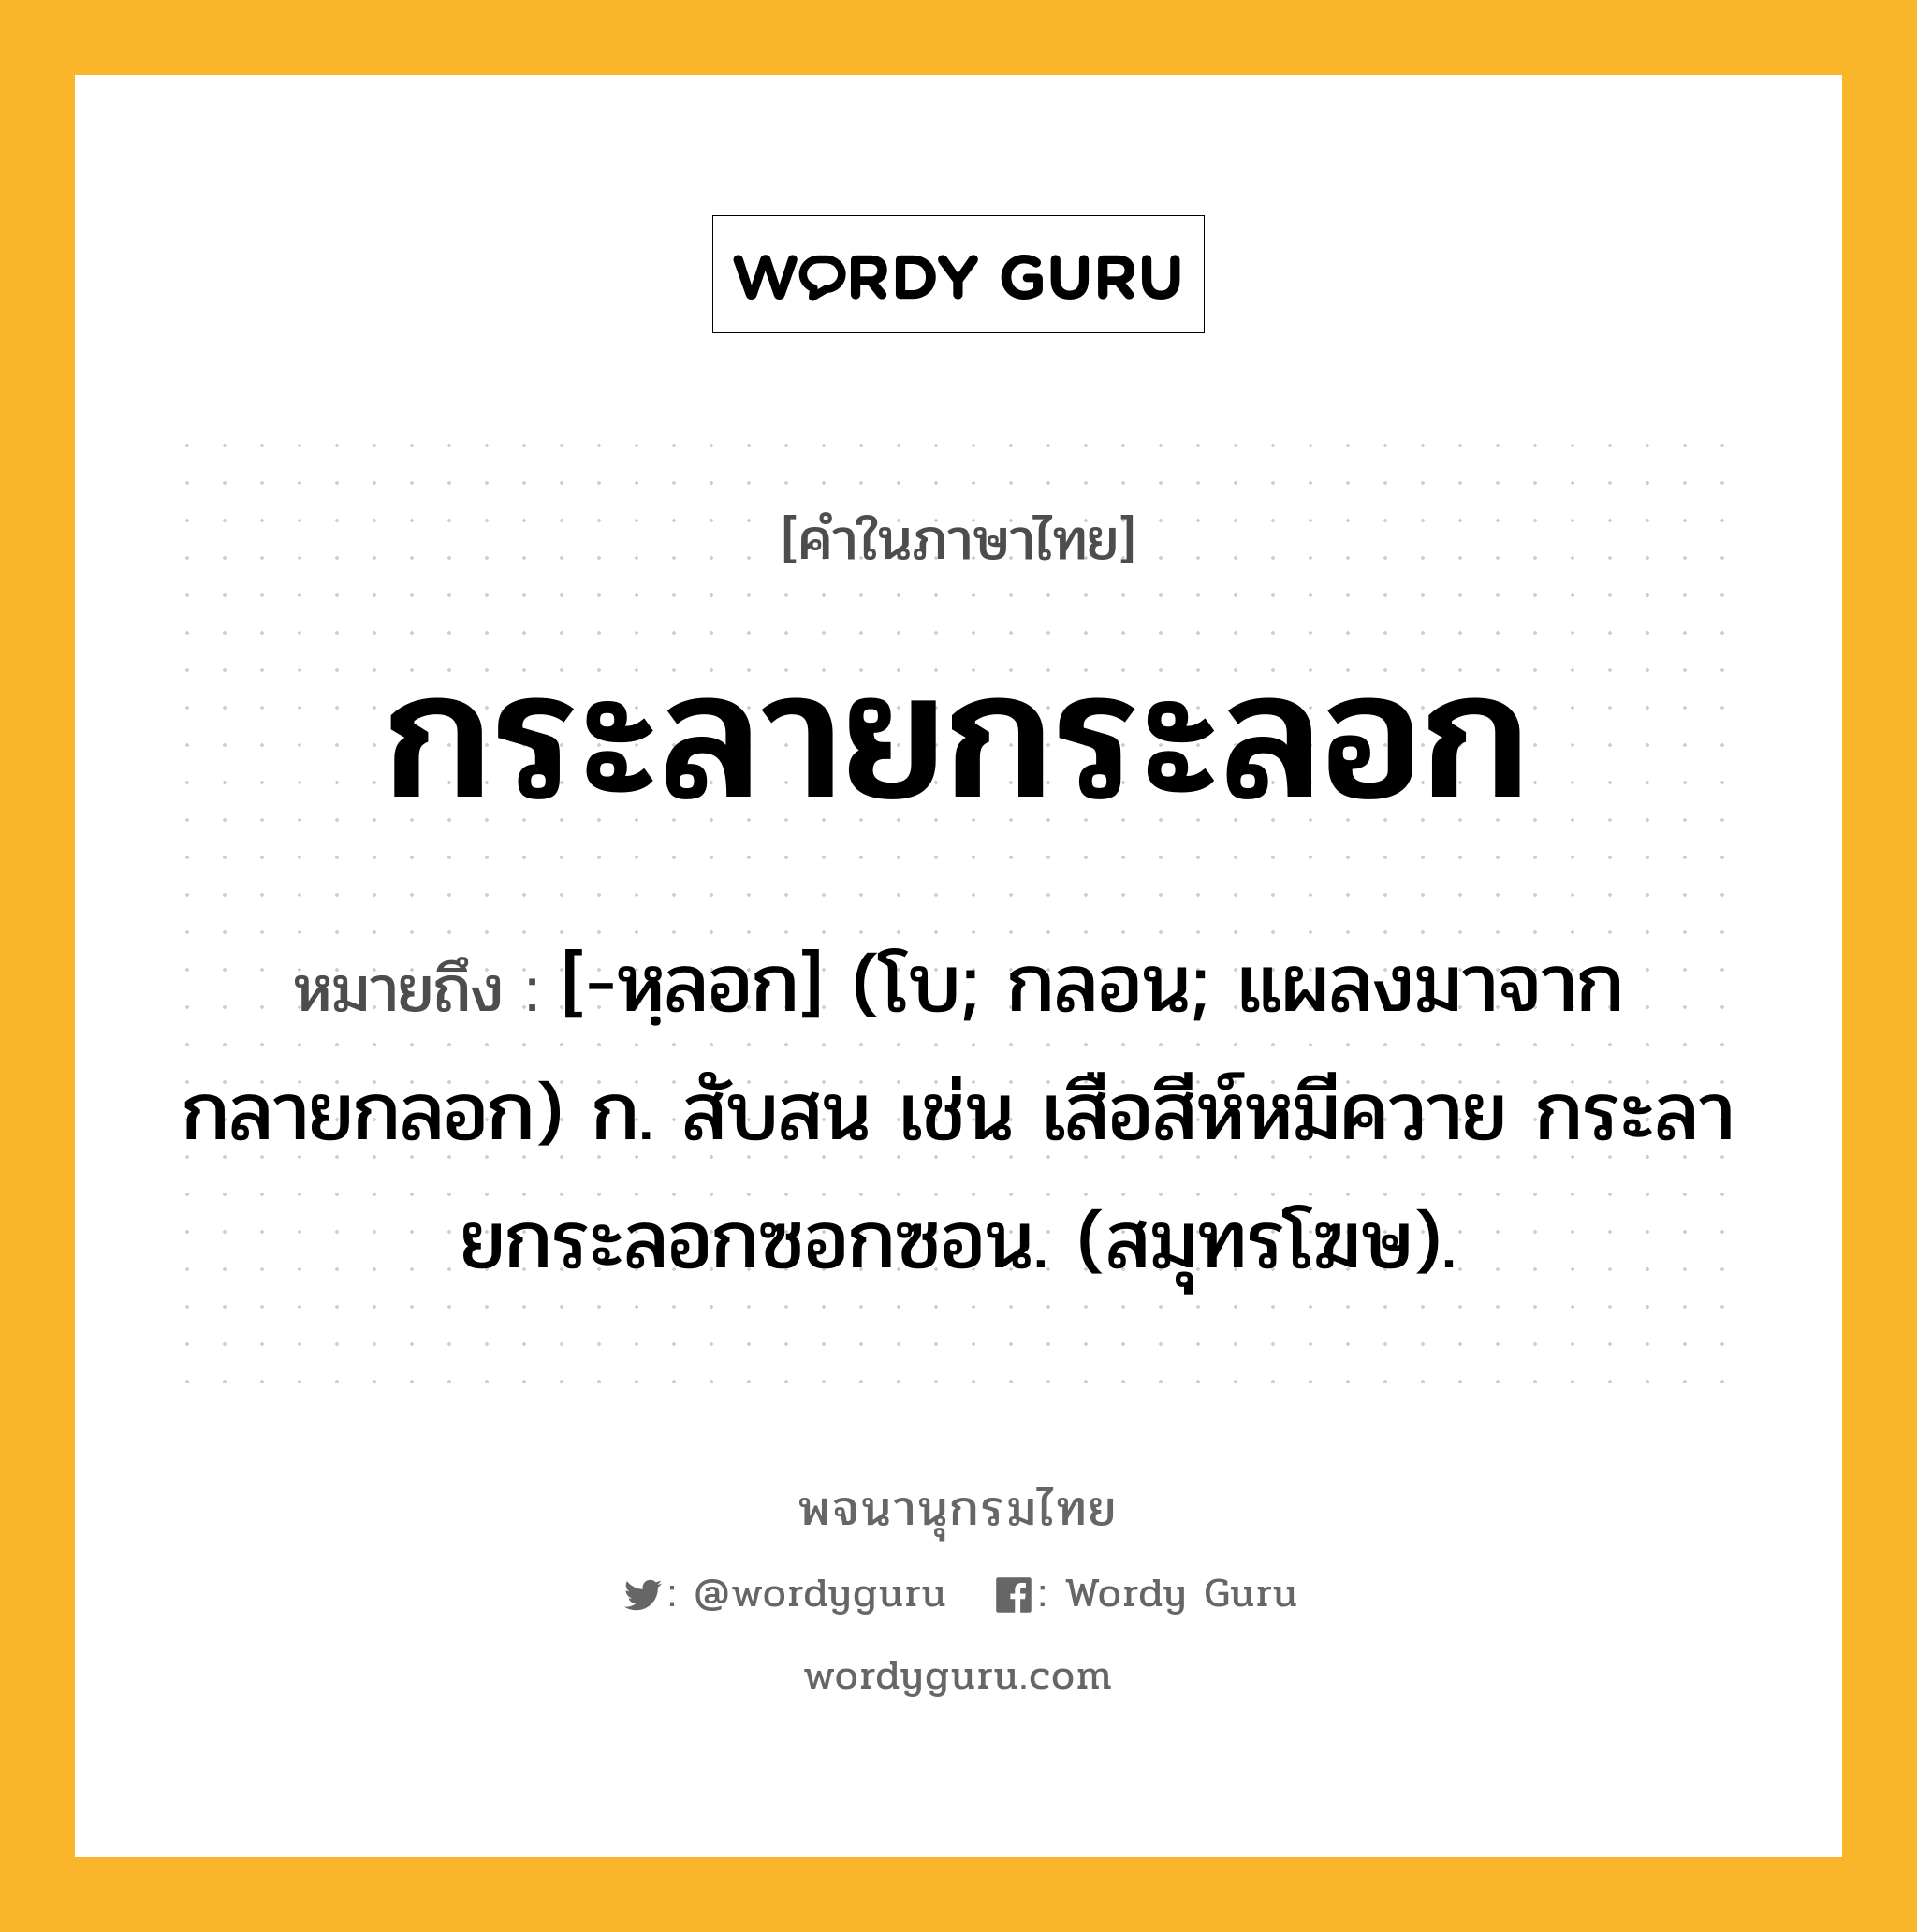 กระลายกระลอก หมายถึงอะไร?, คำในภาษาไทย กระลายกระลอก หมายถึง [-หฺลอก] (โบ; กลอน; แผลงมาจาก กลายกลอก) ก. สับสน เช่น เสือสีห์หมีควาย กระลายกระลอกซอกซอน. (สมุทรโฆษ).